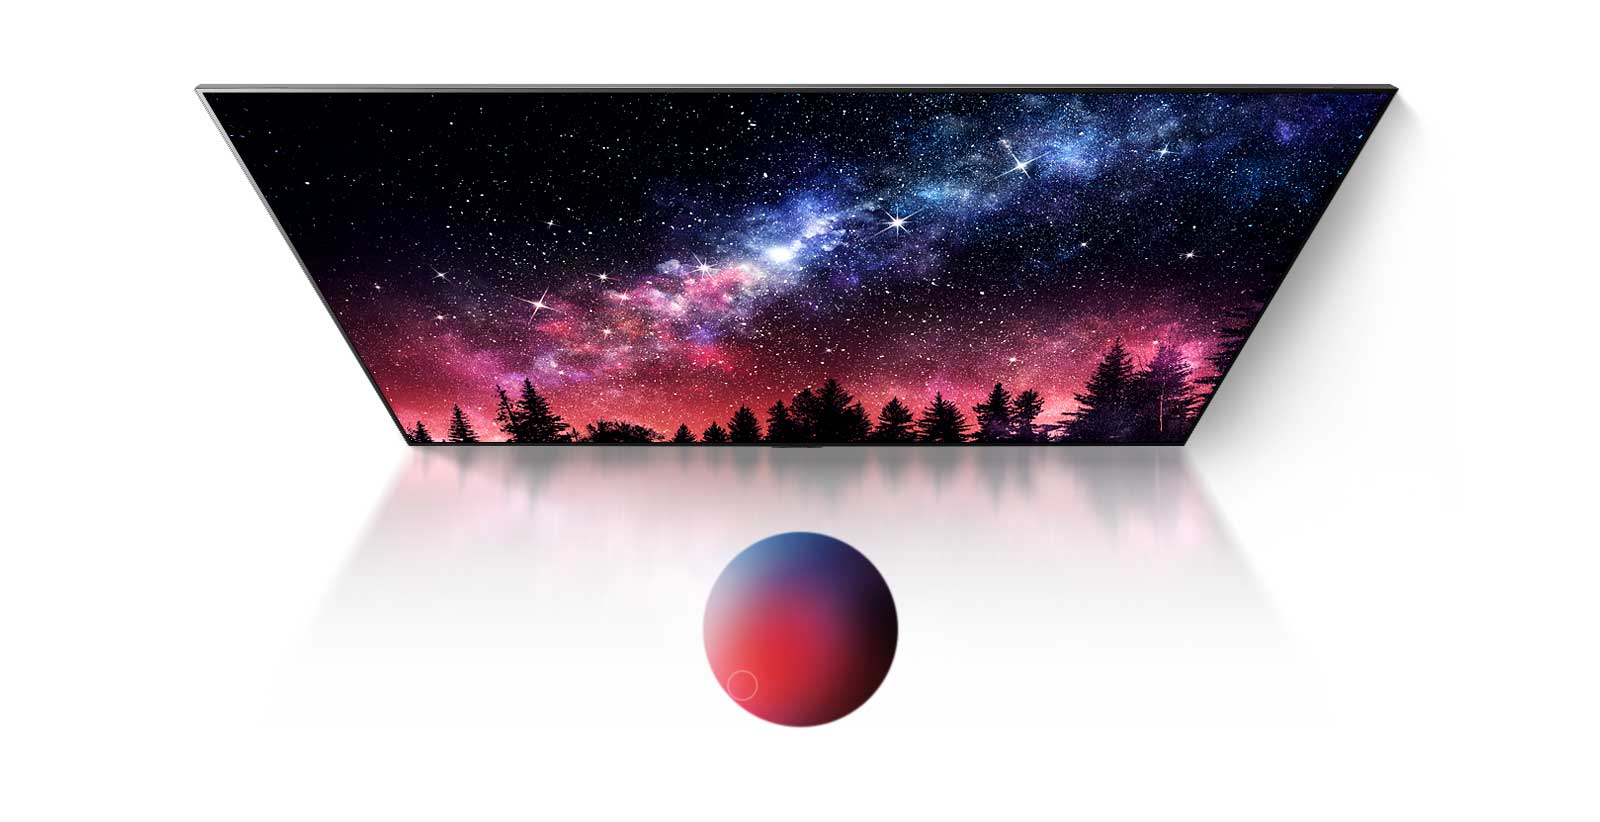 Obrazovka televízora so zobrazením Mliečnej cesty, modrej oblohy a explózie farebného prachu v špičkovej kvalite (prehrať video)